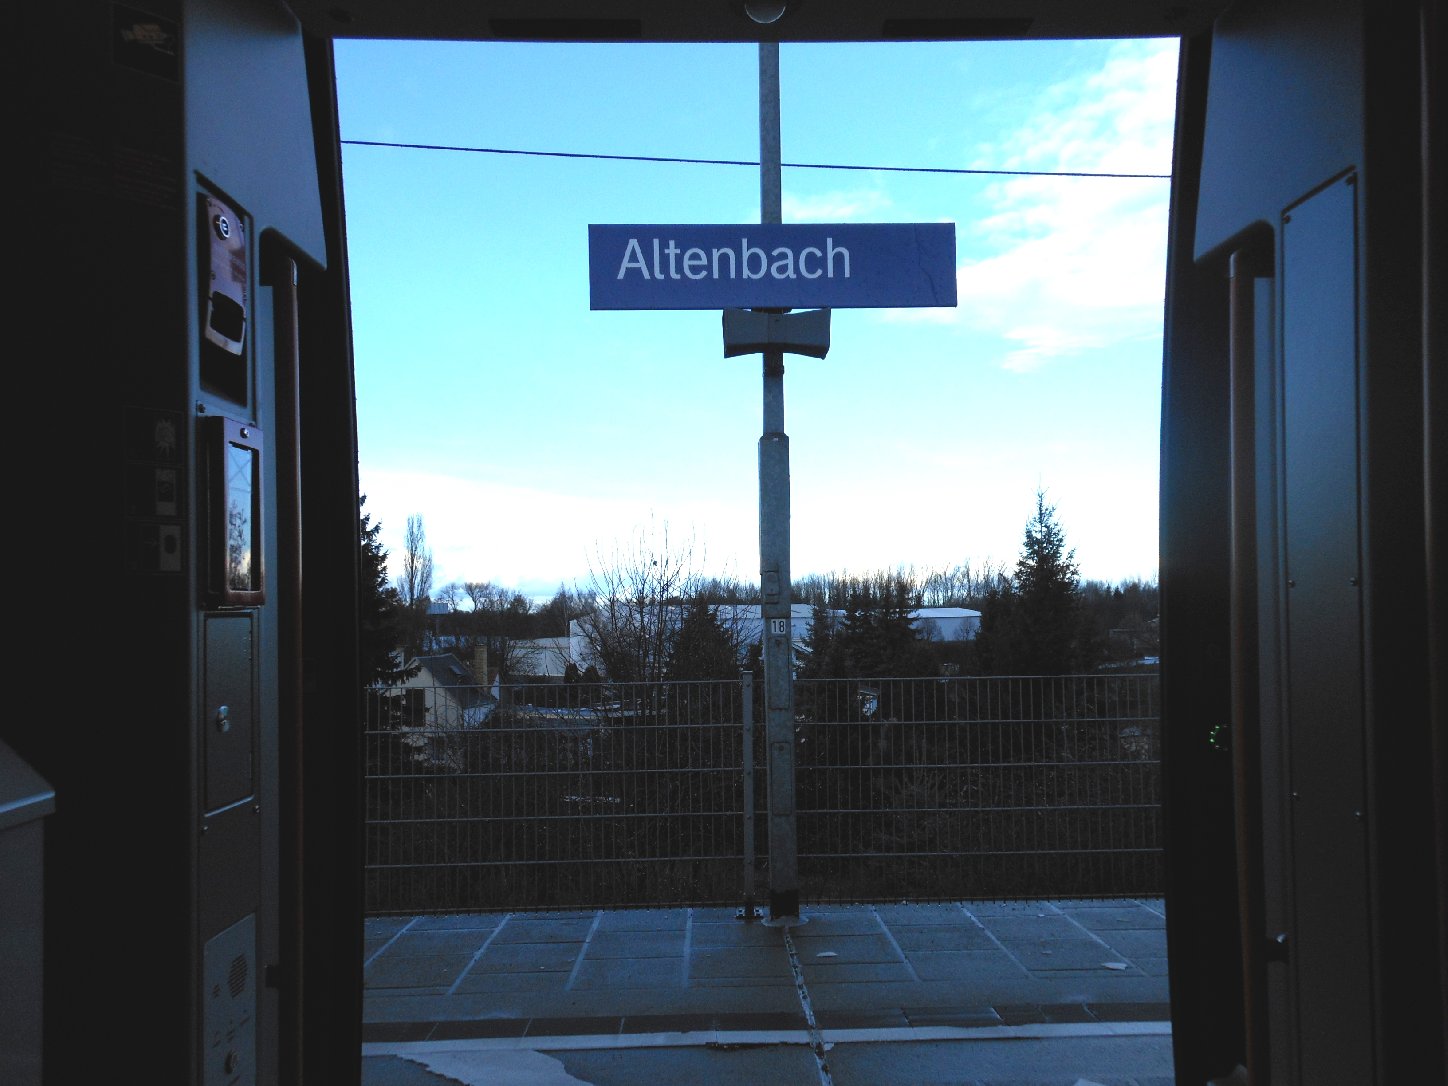 Altenbach